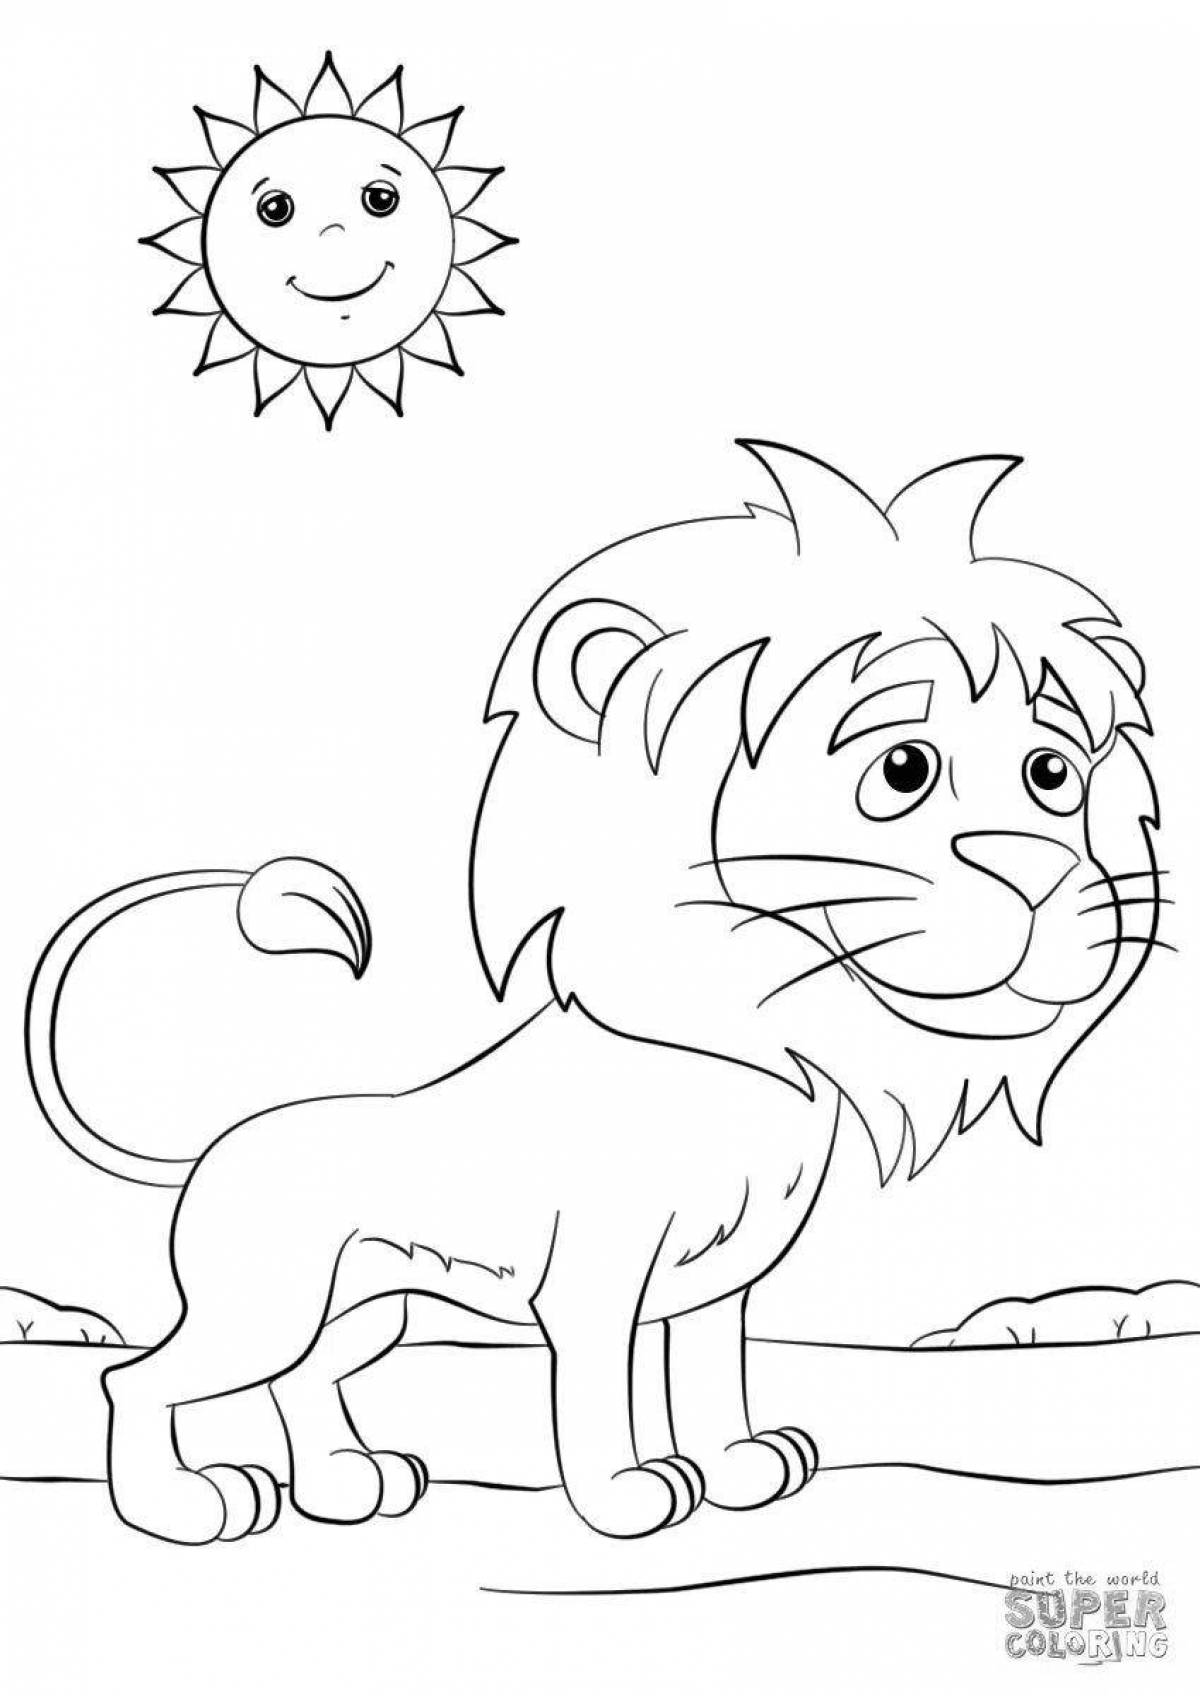 Раскраска свирепый лев для детей 3-4 лет